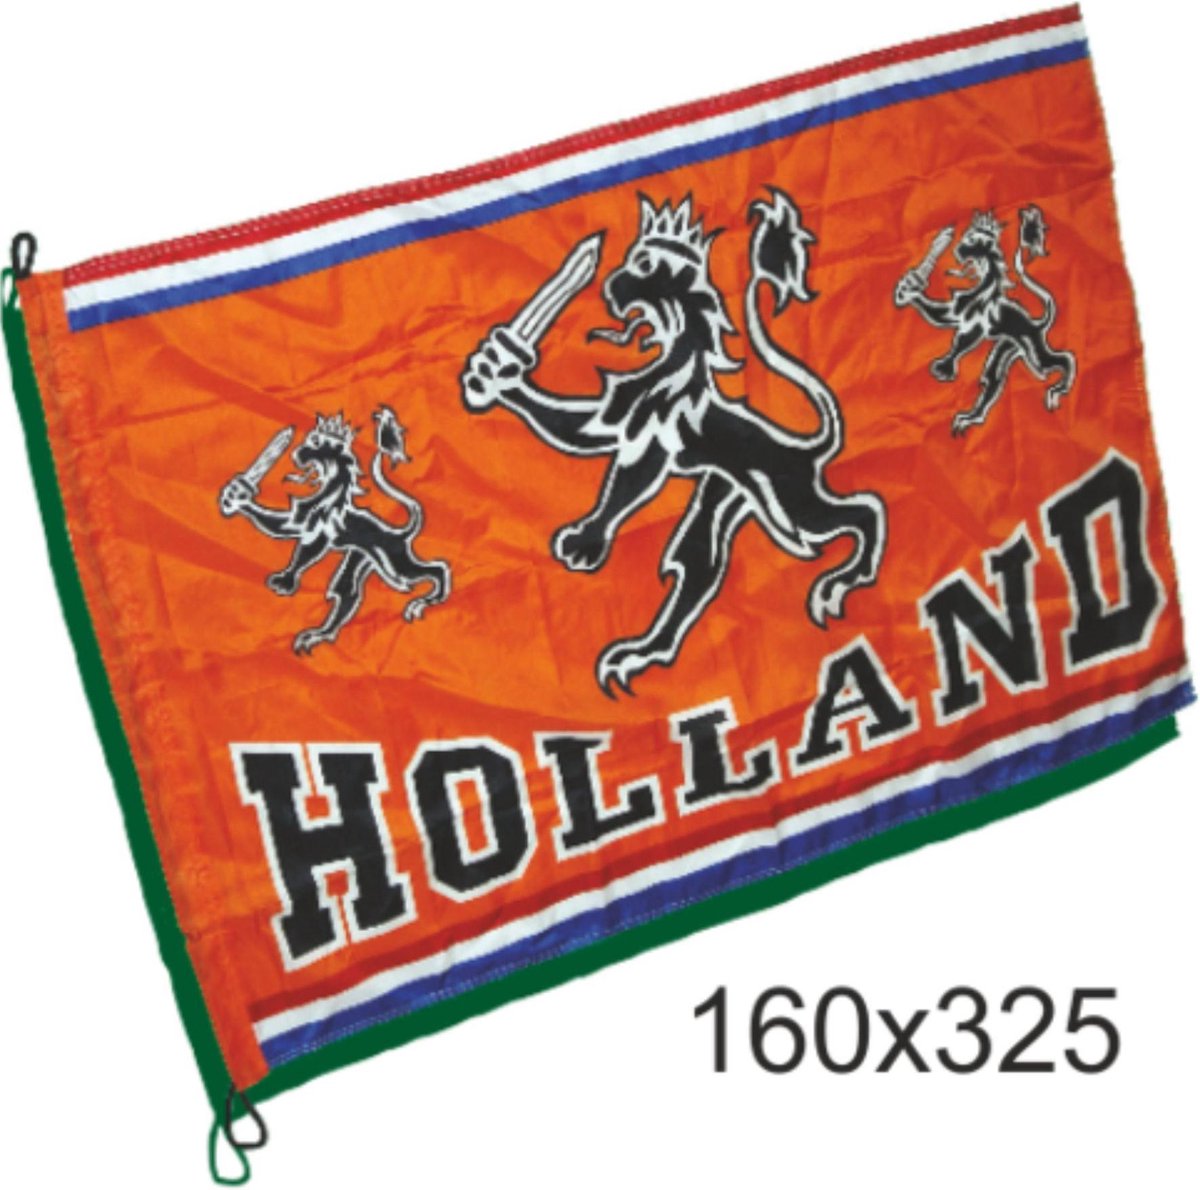 Mega grote vlag oranje Holland met leeuw | EK Voetbal 2020 2021 | Nederlands elftal vlag | Nederland supporter | Holland souvenir | 160 x 325 cm